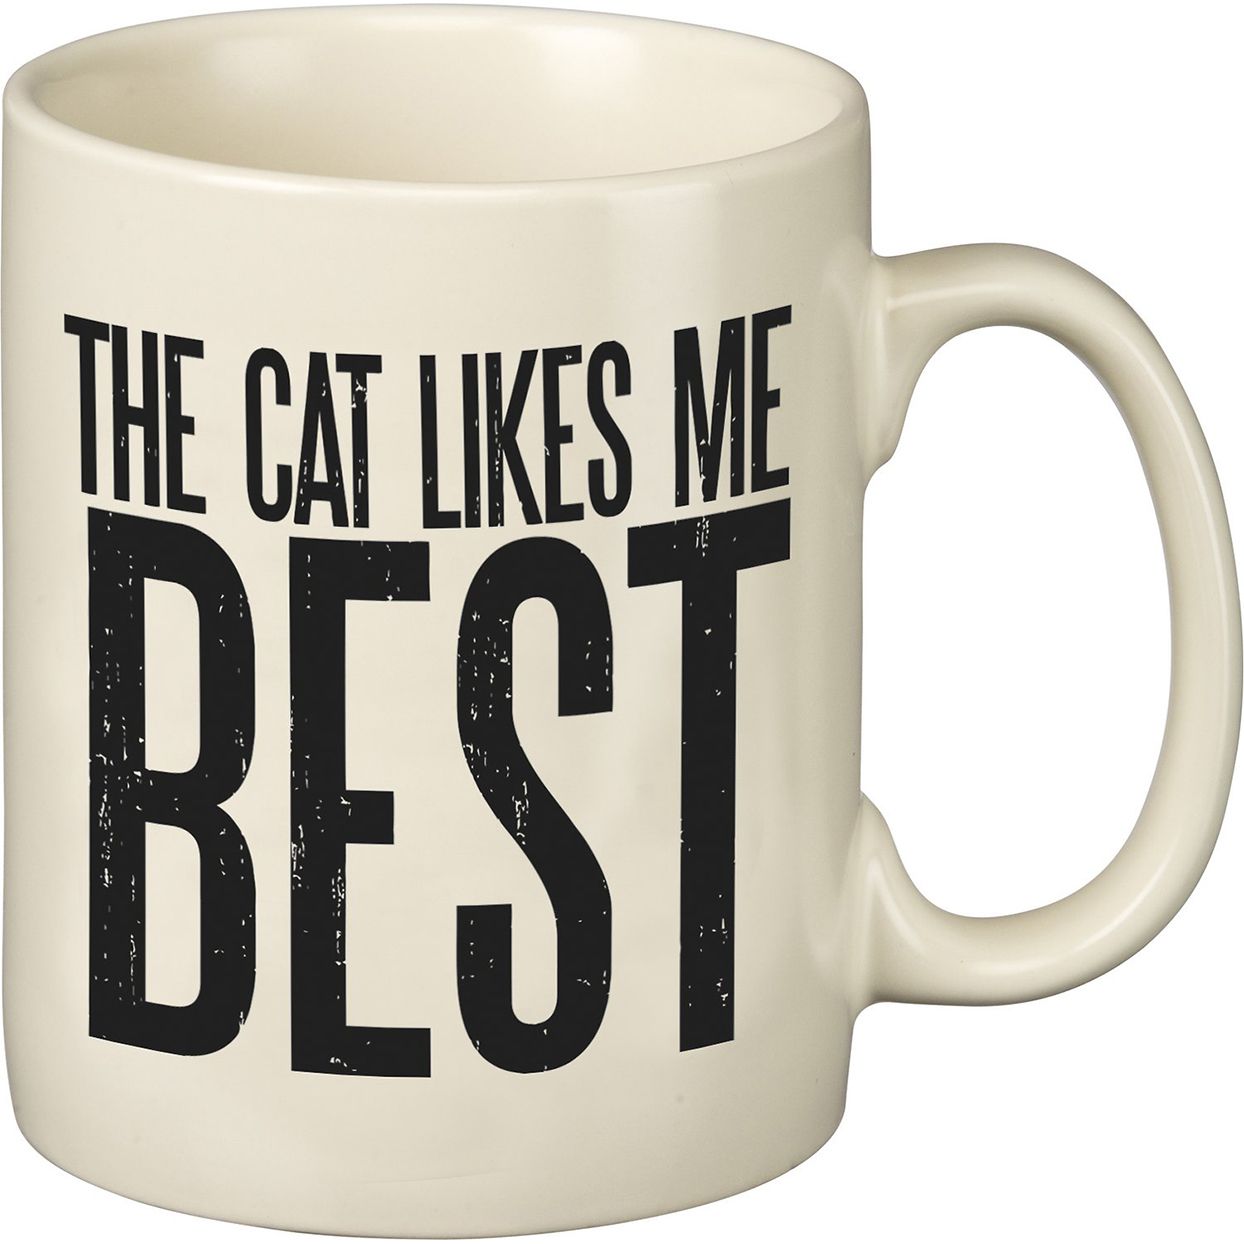 Cat likes me best mug